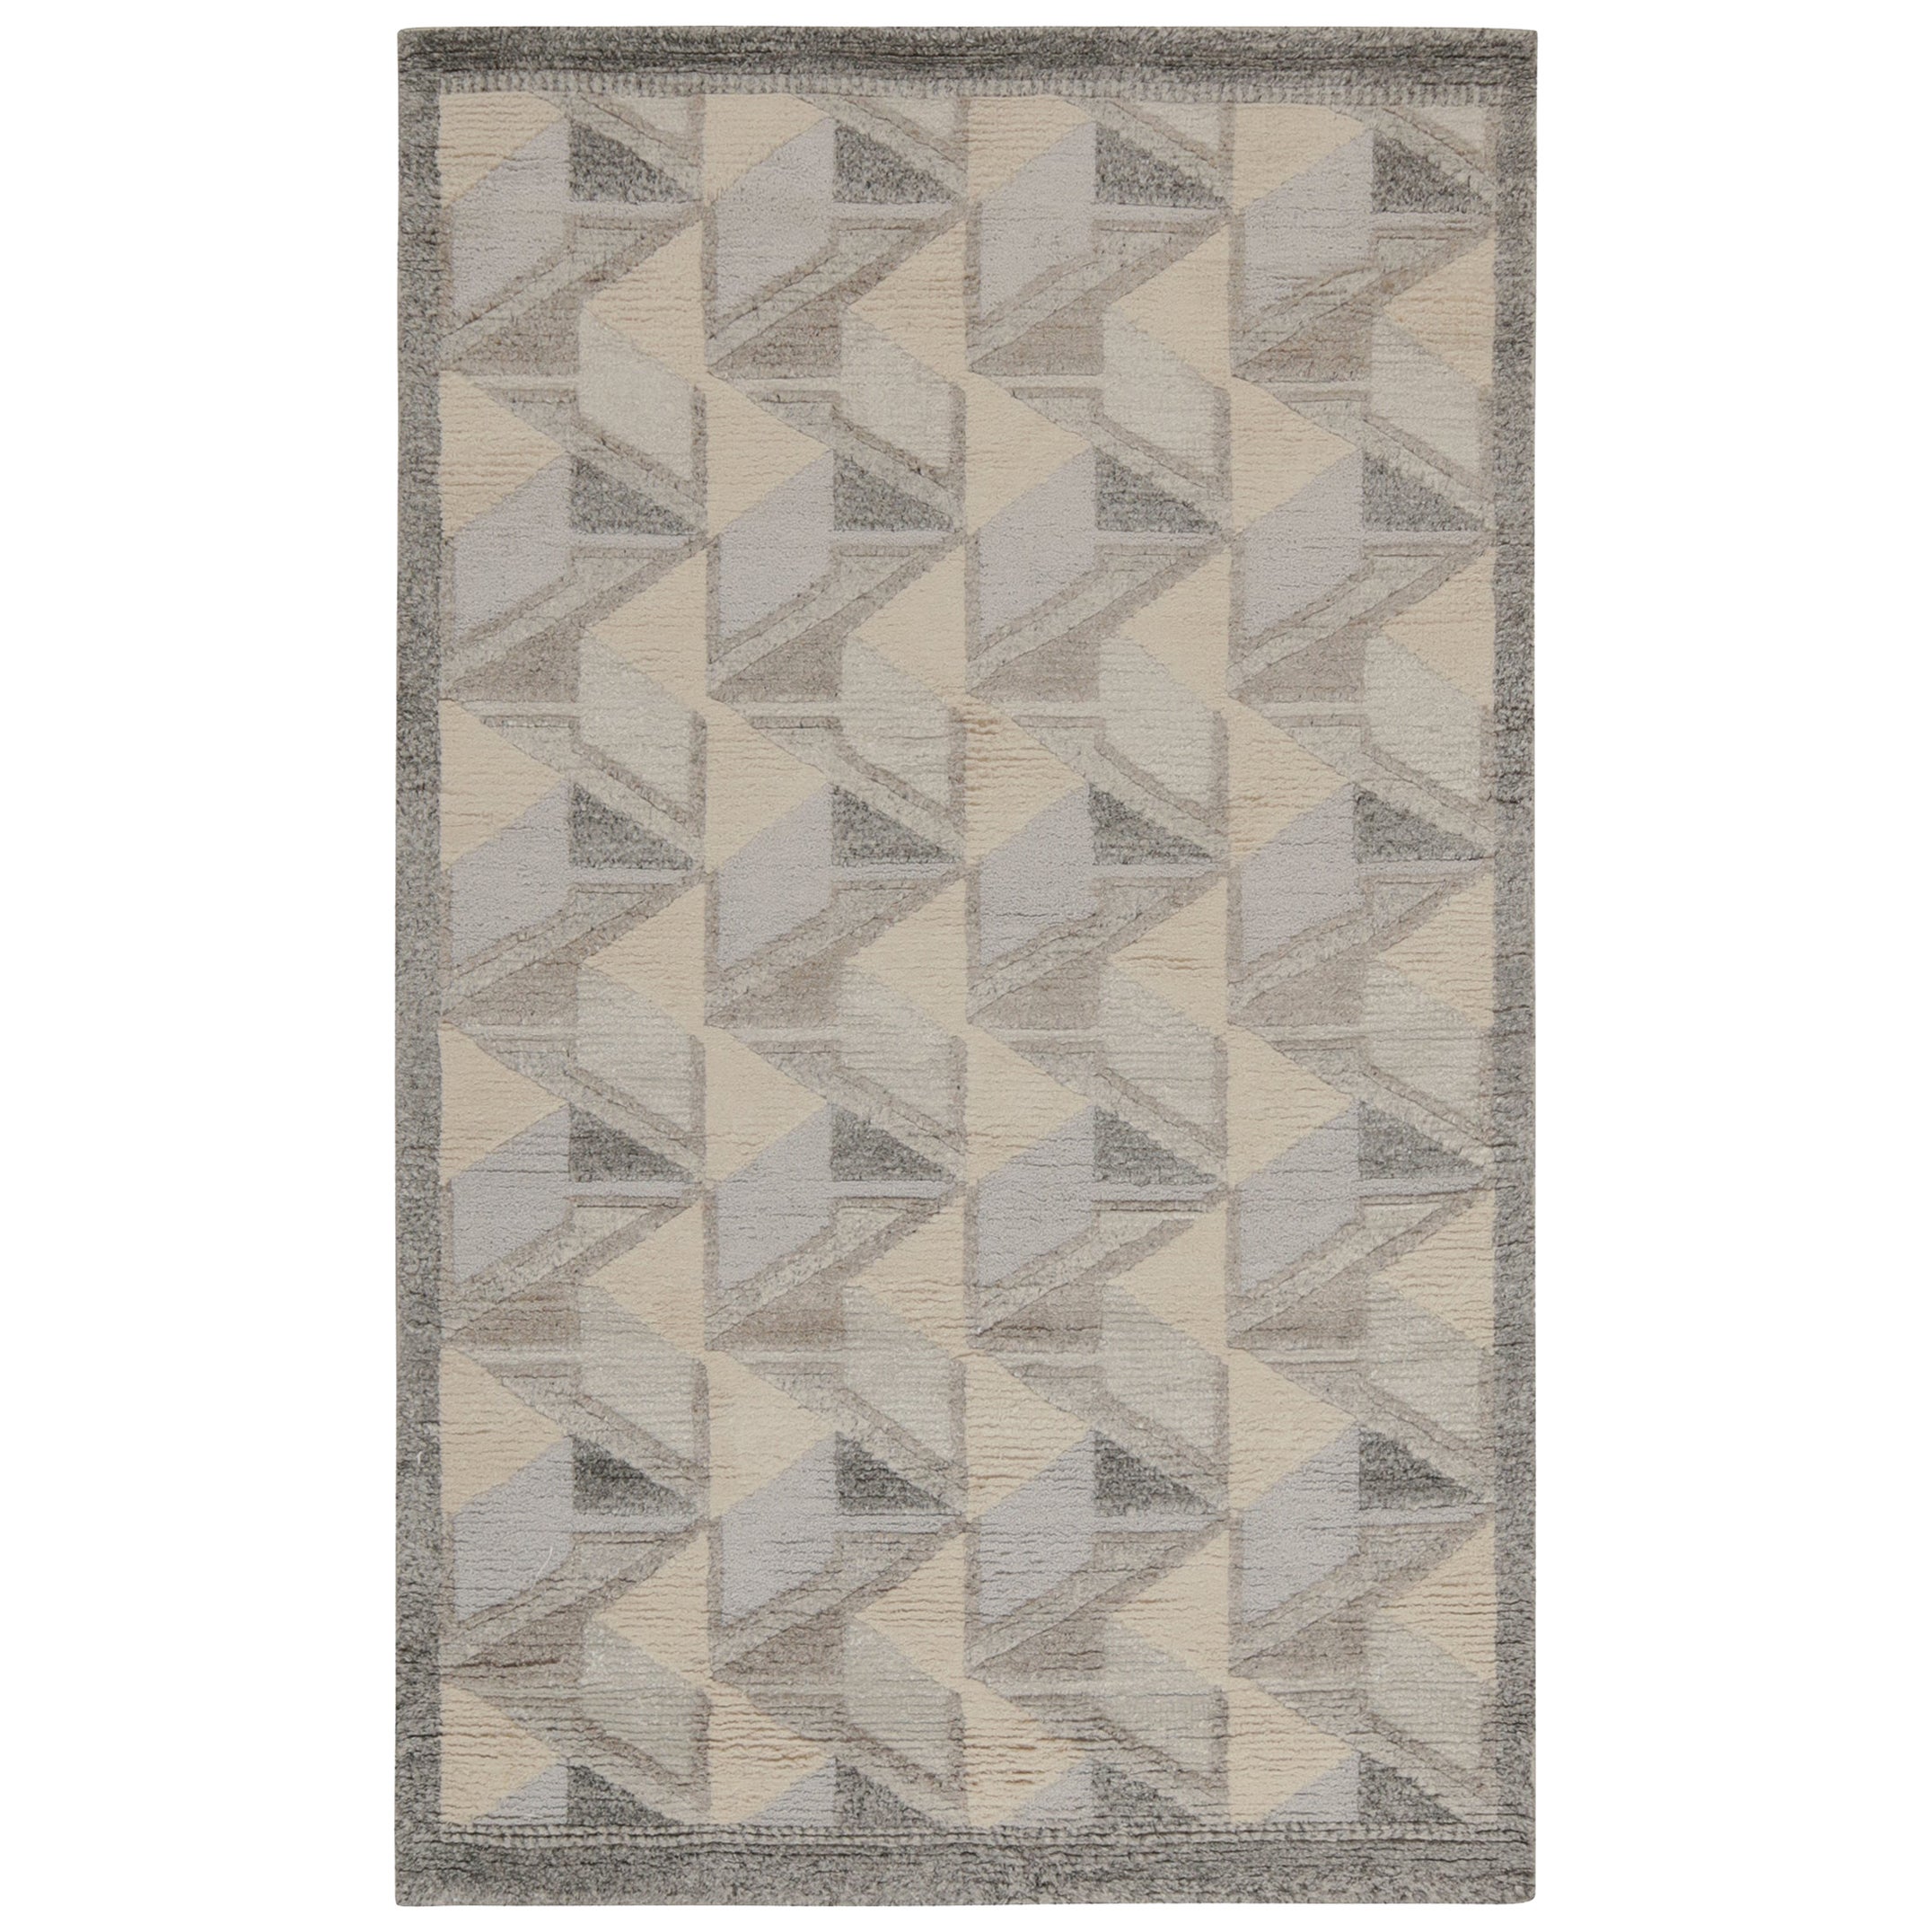 Rug & Kilim's Teppich im skandinavischen Stil in Elfenbein, Grau und Blau Geometrisches Muster